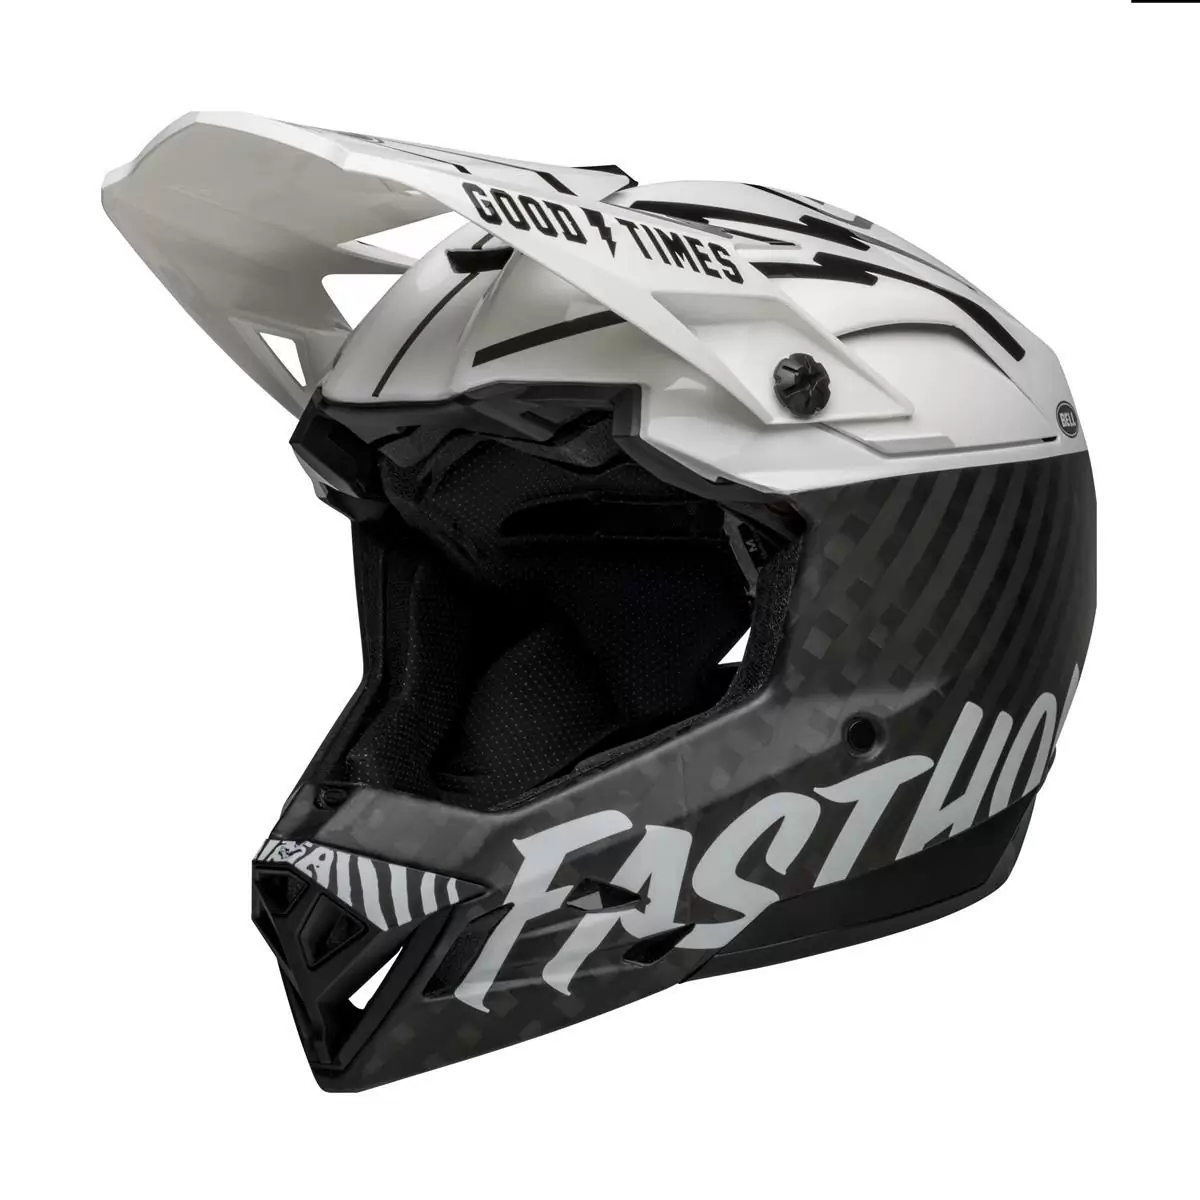 Full-10 Spherical Fasthouse Carbon Full Face Helmet Size XS/S (51-55cm) #2